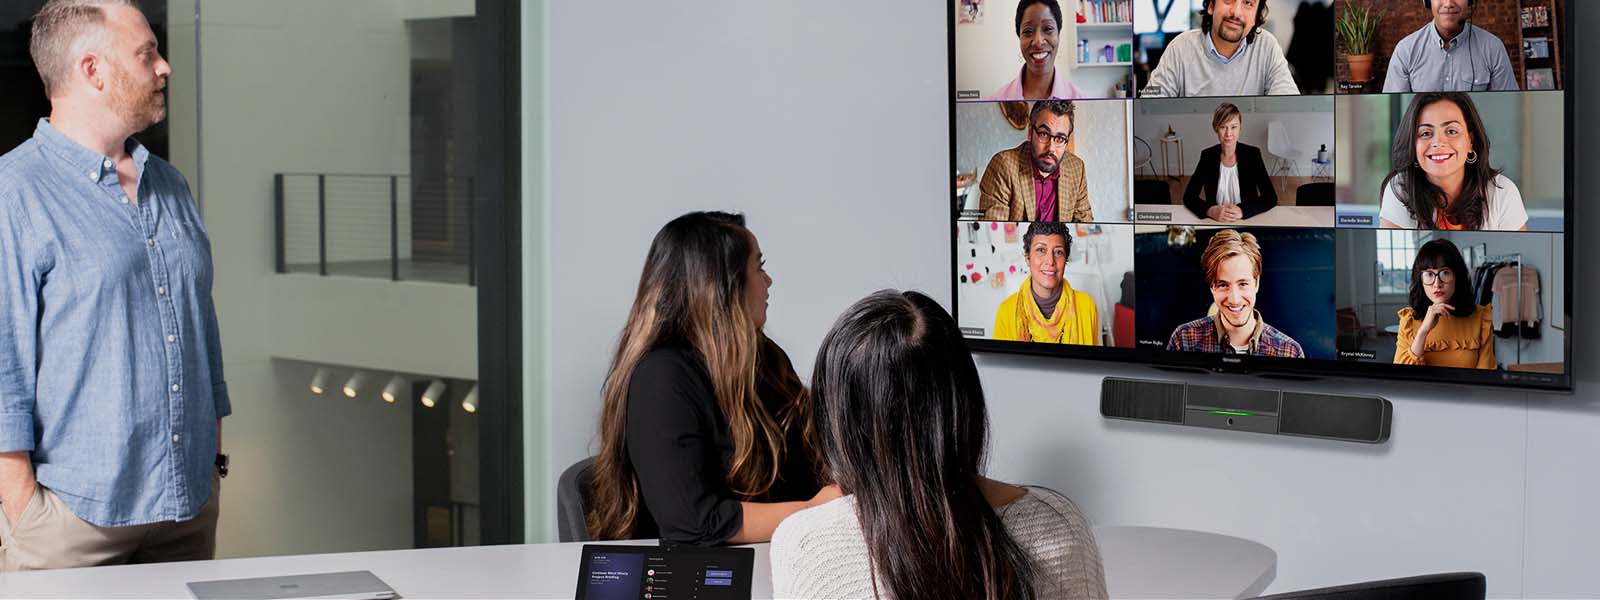 Tre personer i ett konferensrum deltar i en videokonferens